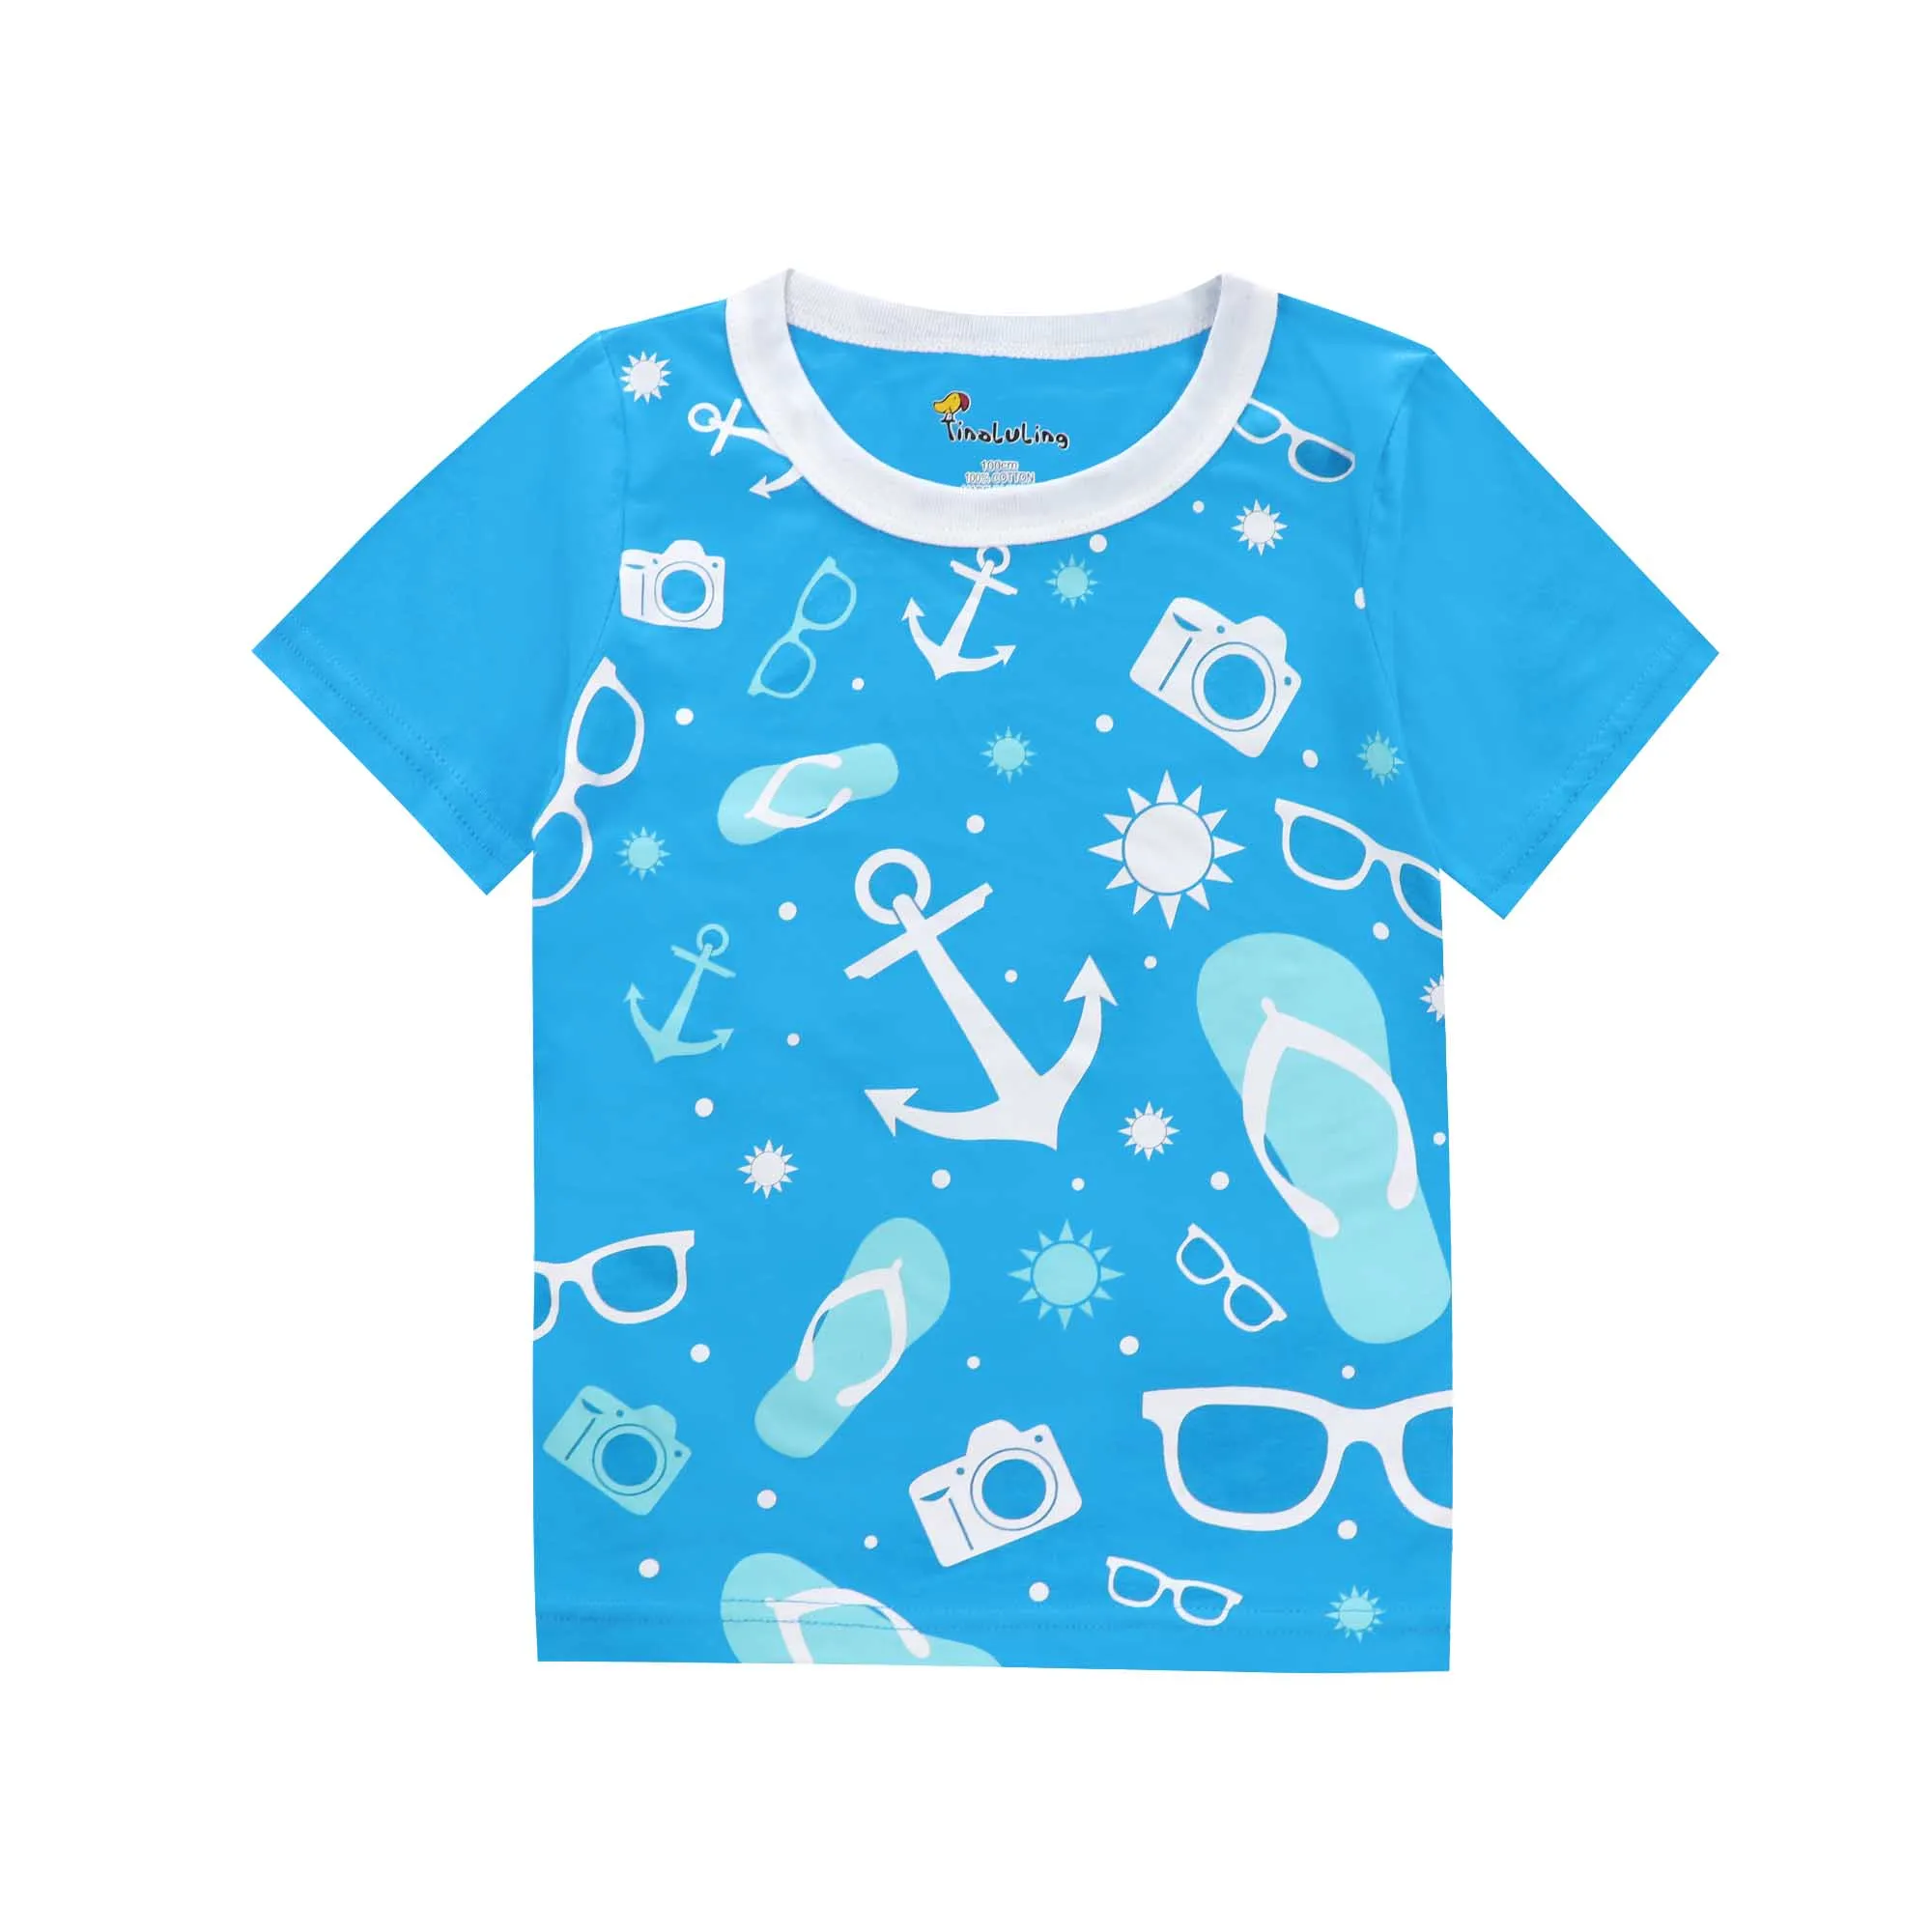 Детская футболка для отдыха детские вечерние футболки Round футболка с круглым вырезом Детская Хлопковая футболка Летняя детская футболка детская одежда - Цвет: ST010